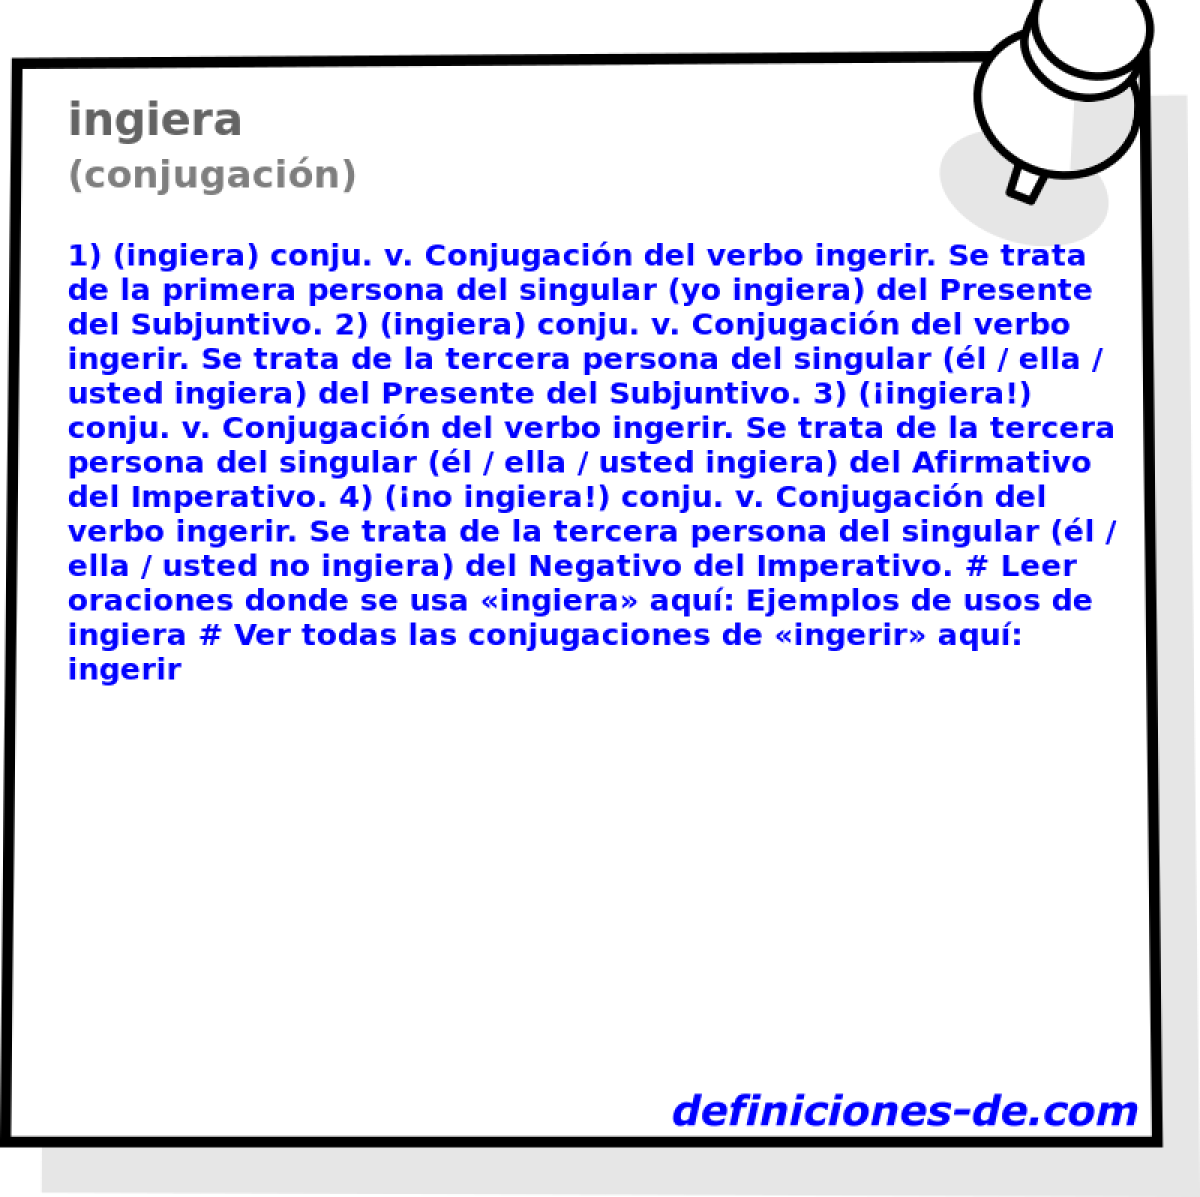 ingiera (conjugacin)